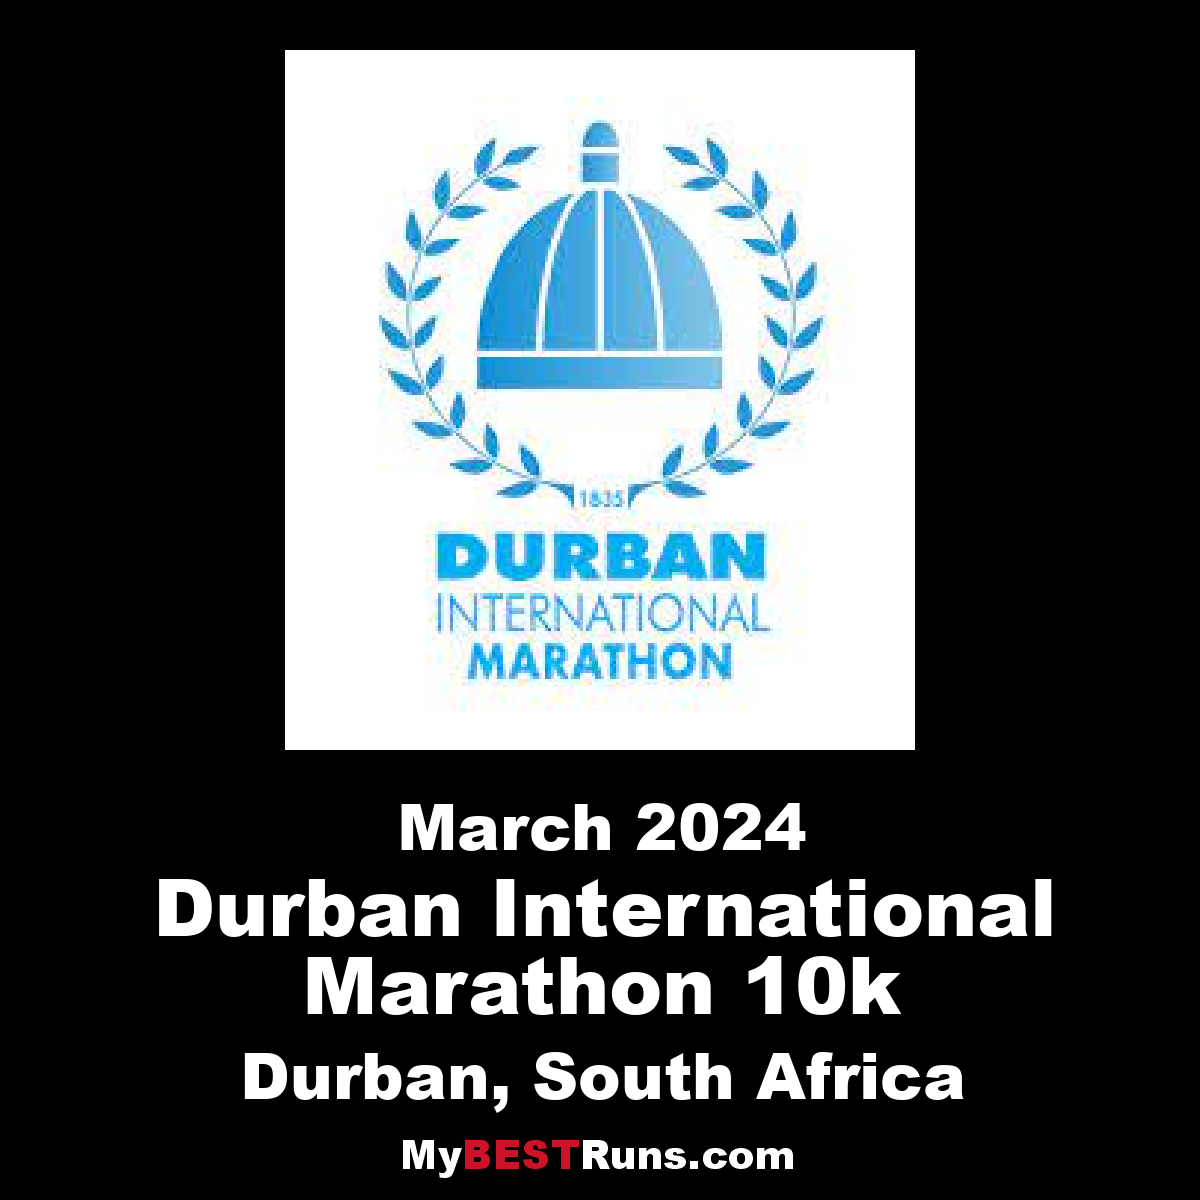 Durban International Marathon 10k